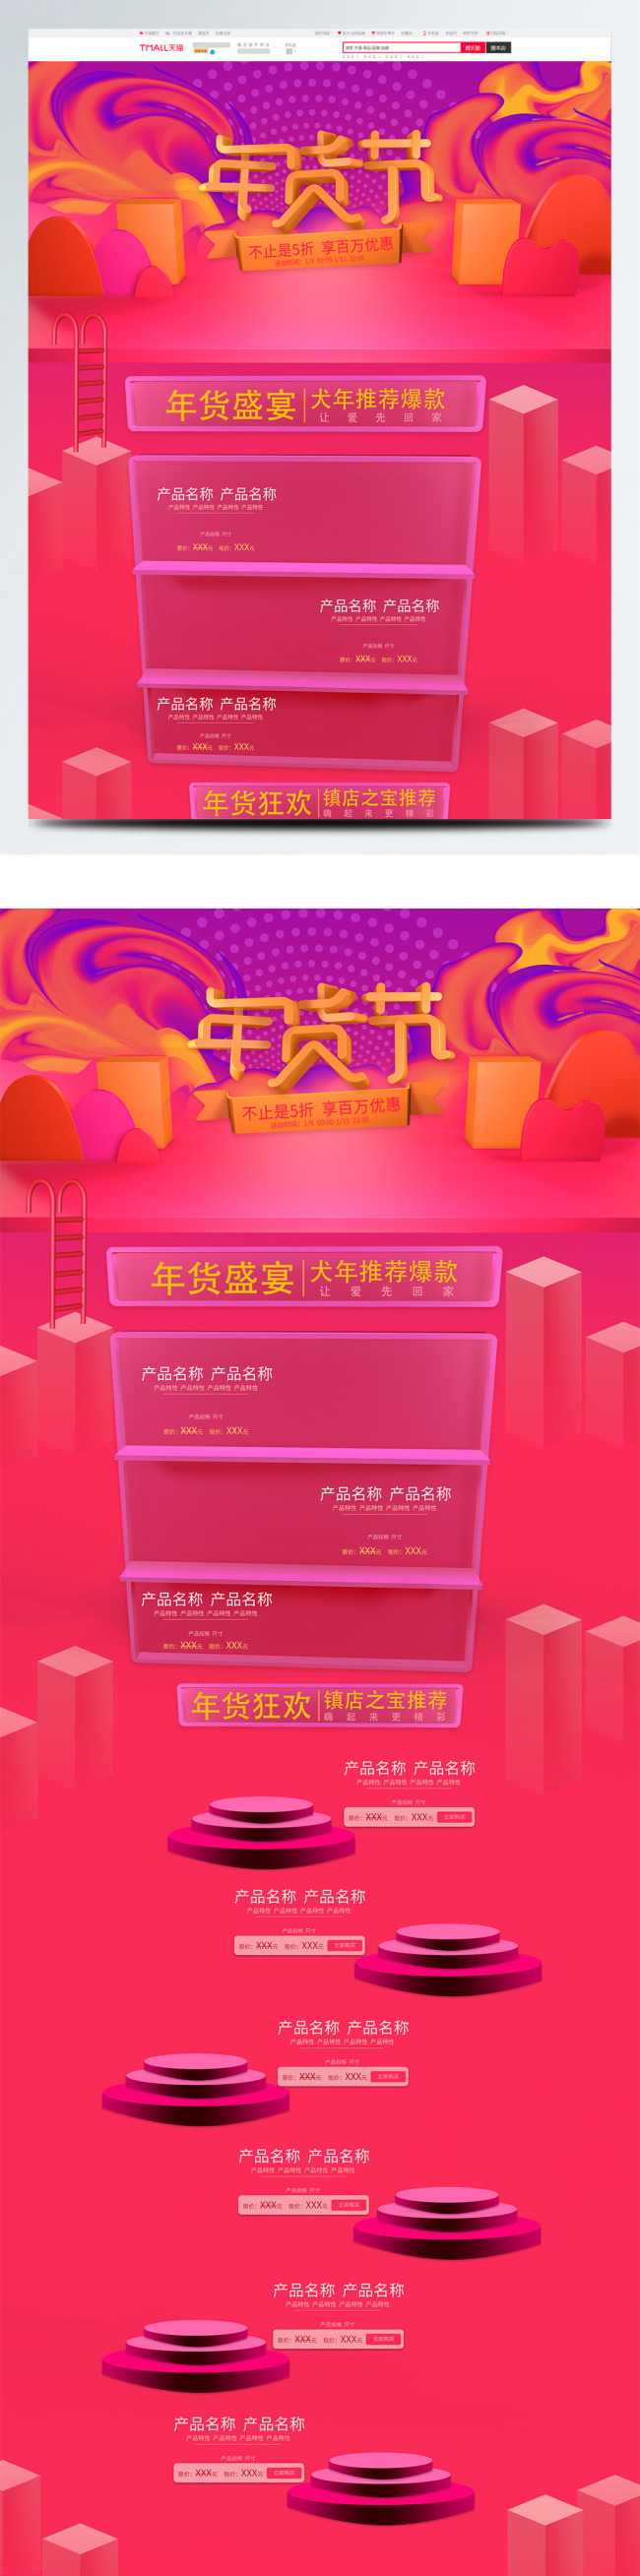 淡红色三维2018电商天猫年货节首页模板图片